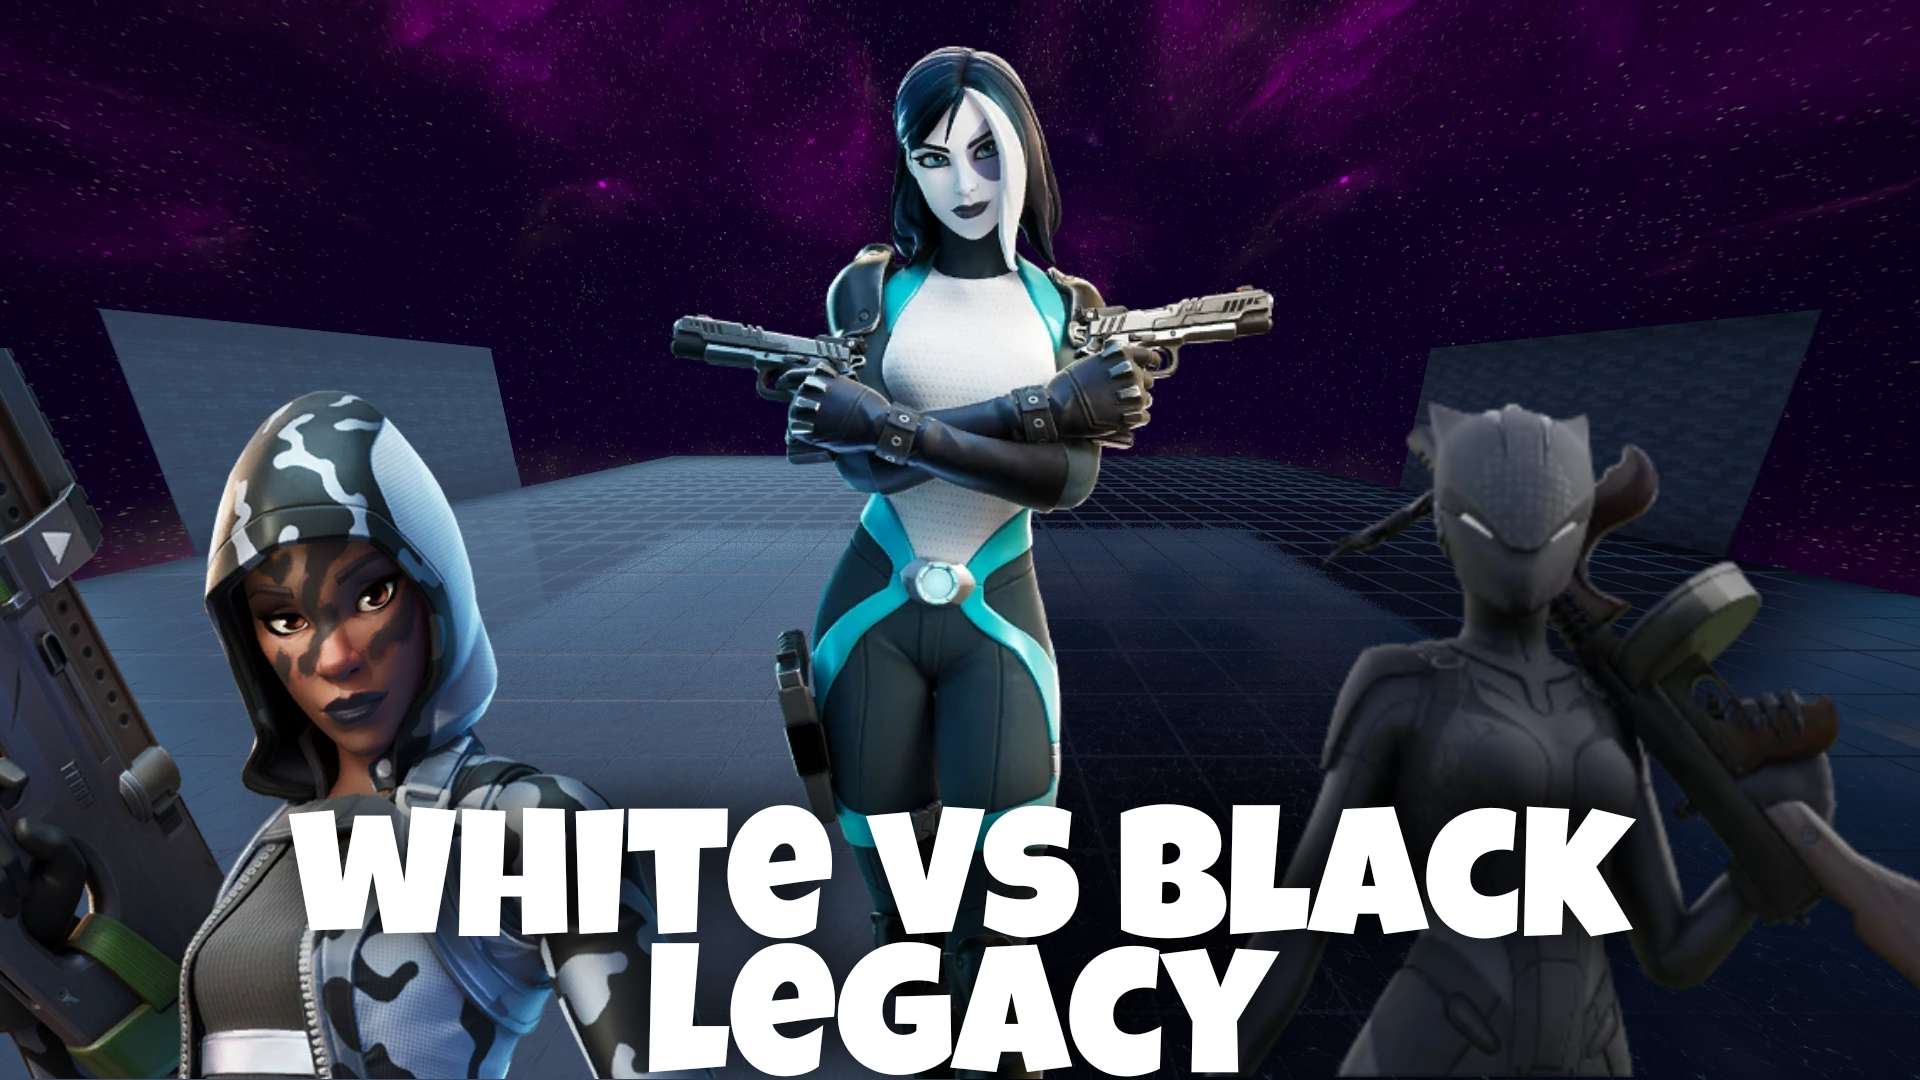 WHITE VS BLACK LEGACY image 3